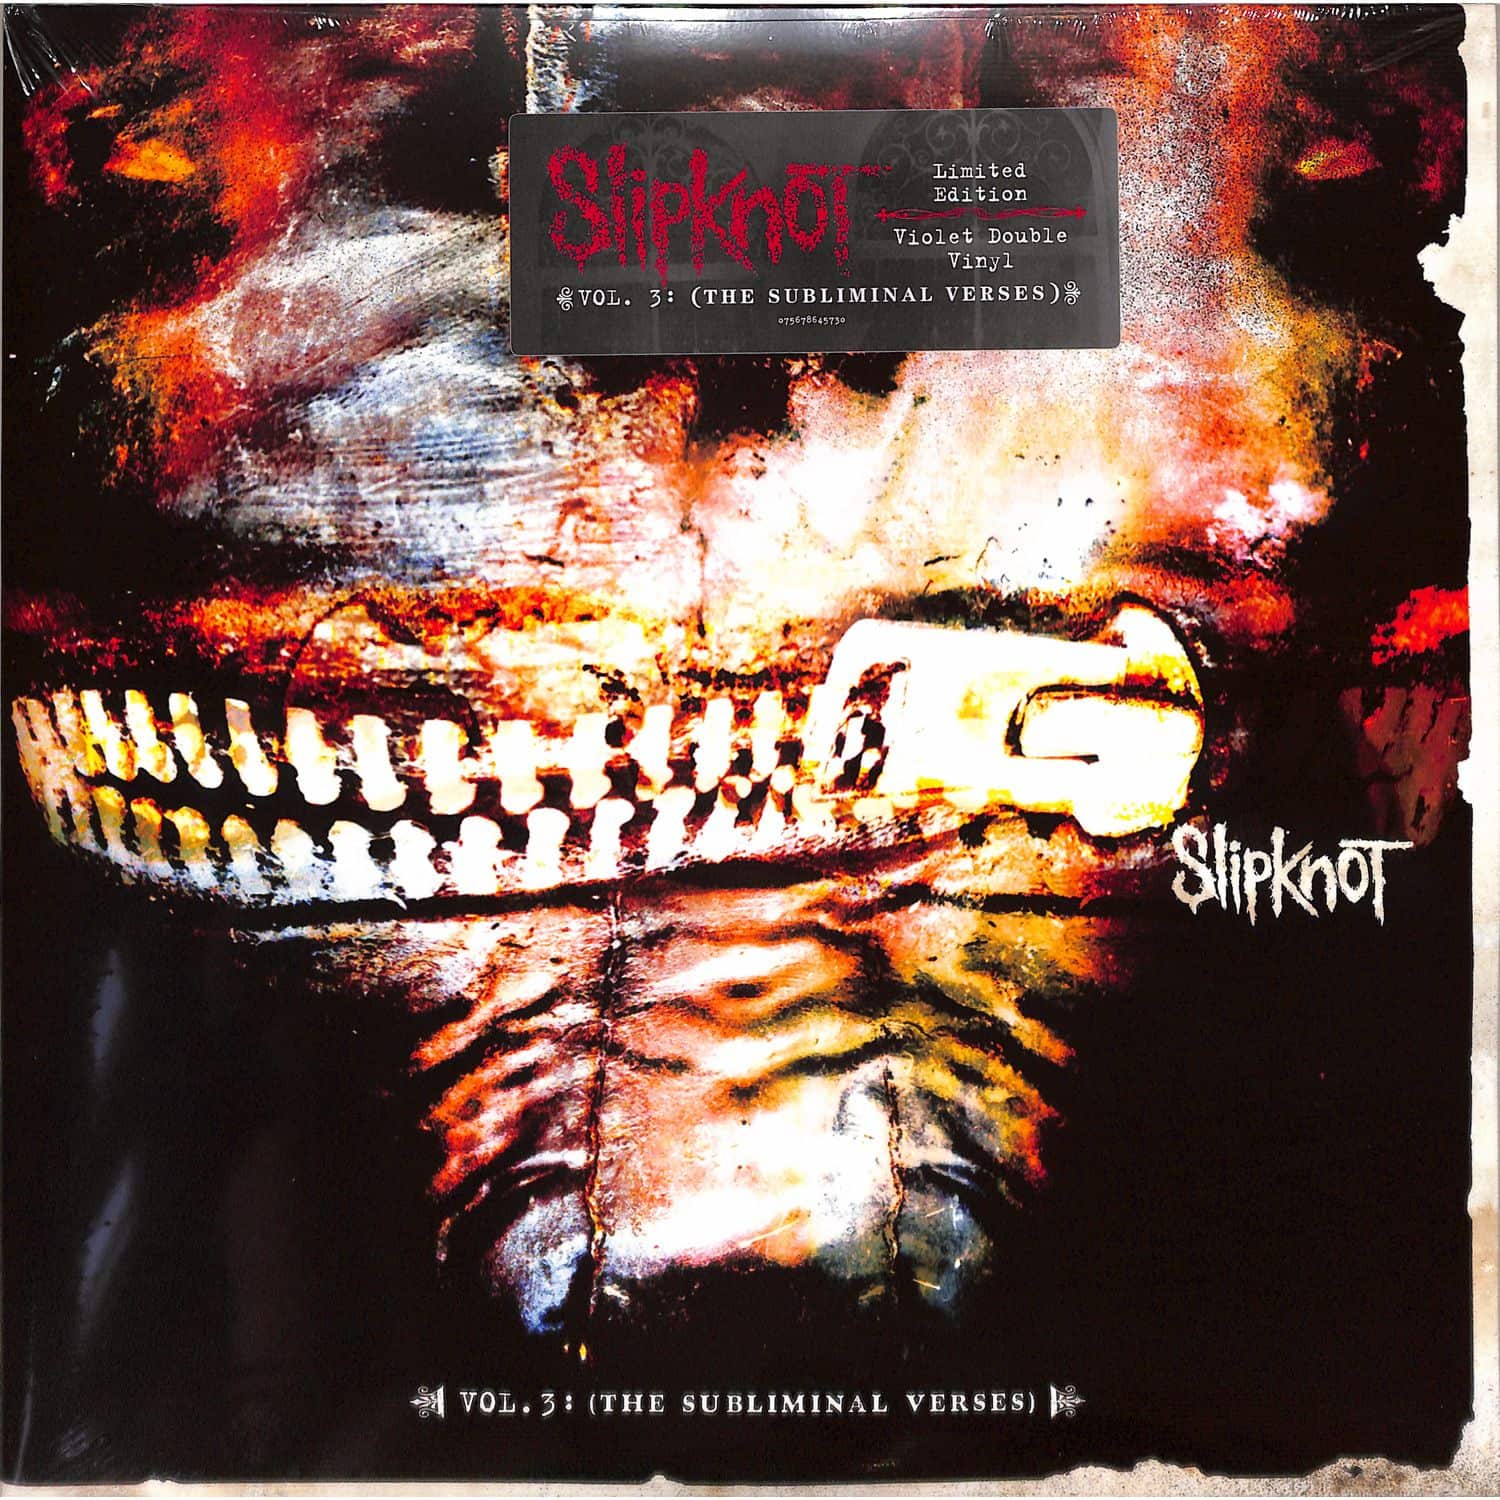 Slipknot - VOL. 3: THE SUBLIMINAL VERSES 